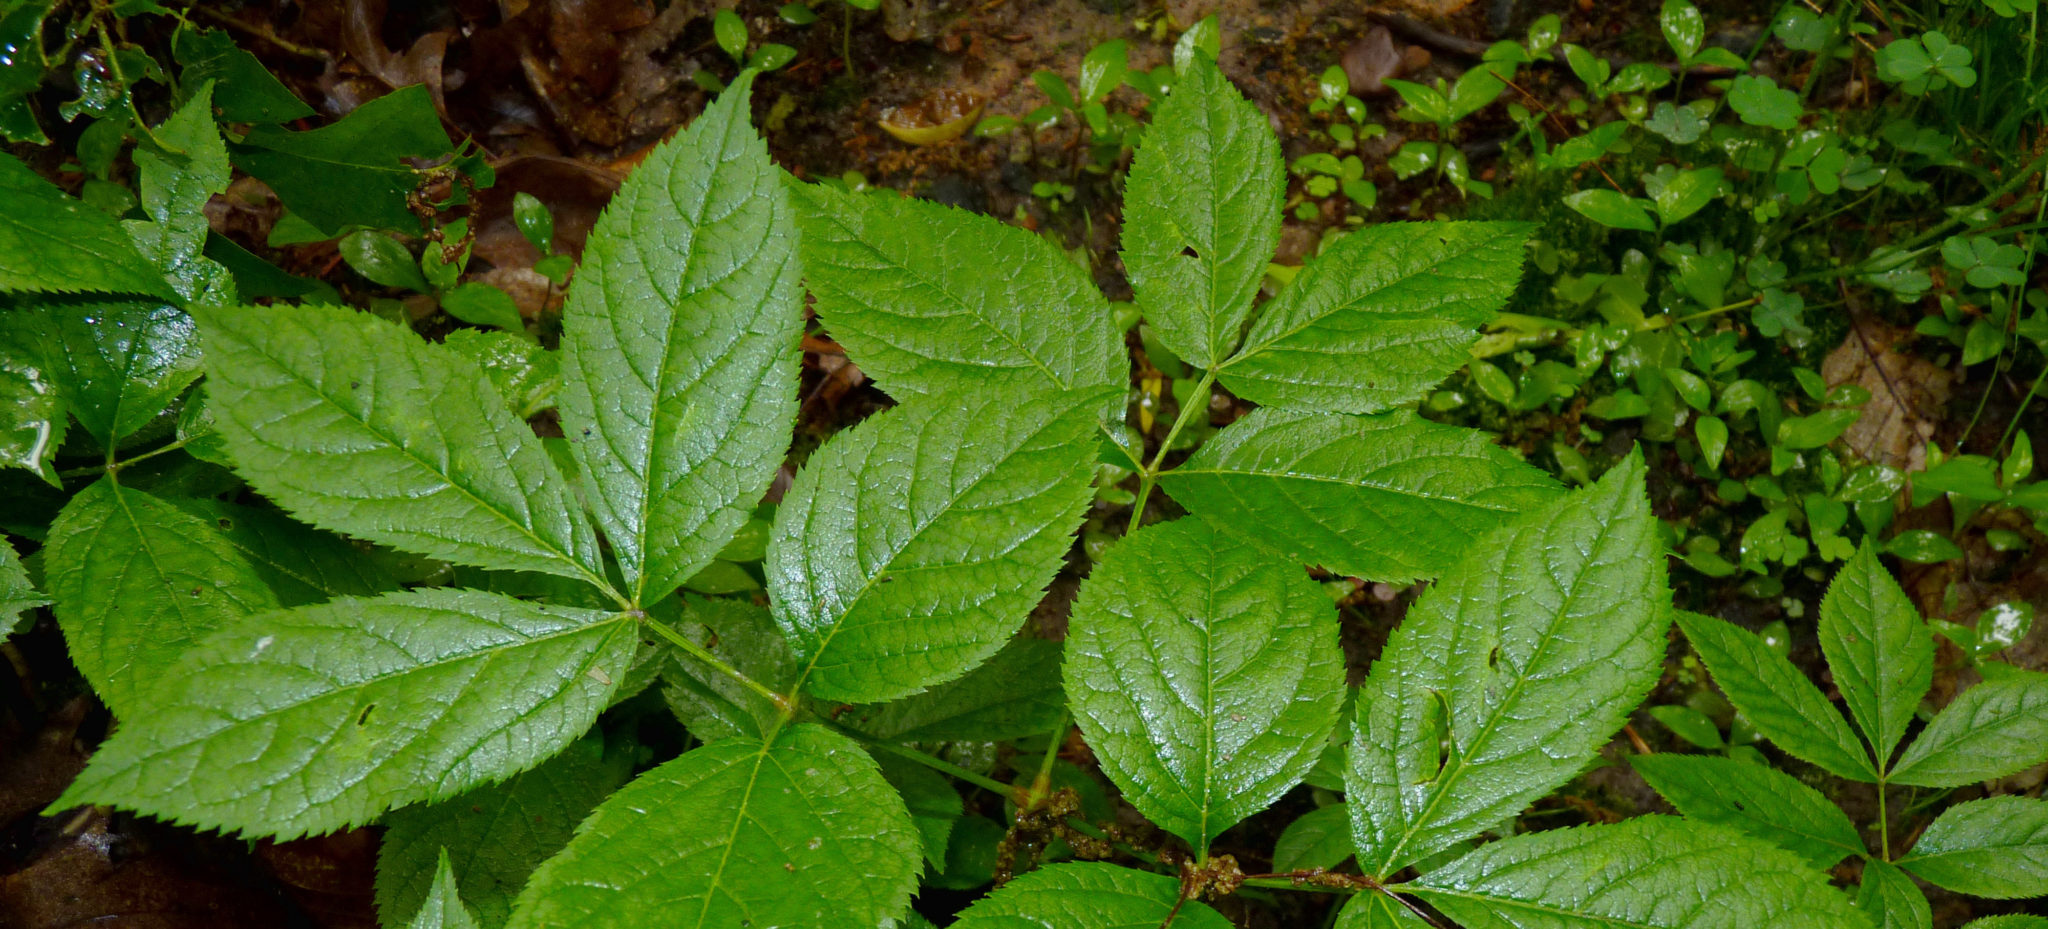 Wild sarsaparilla leaves